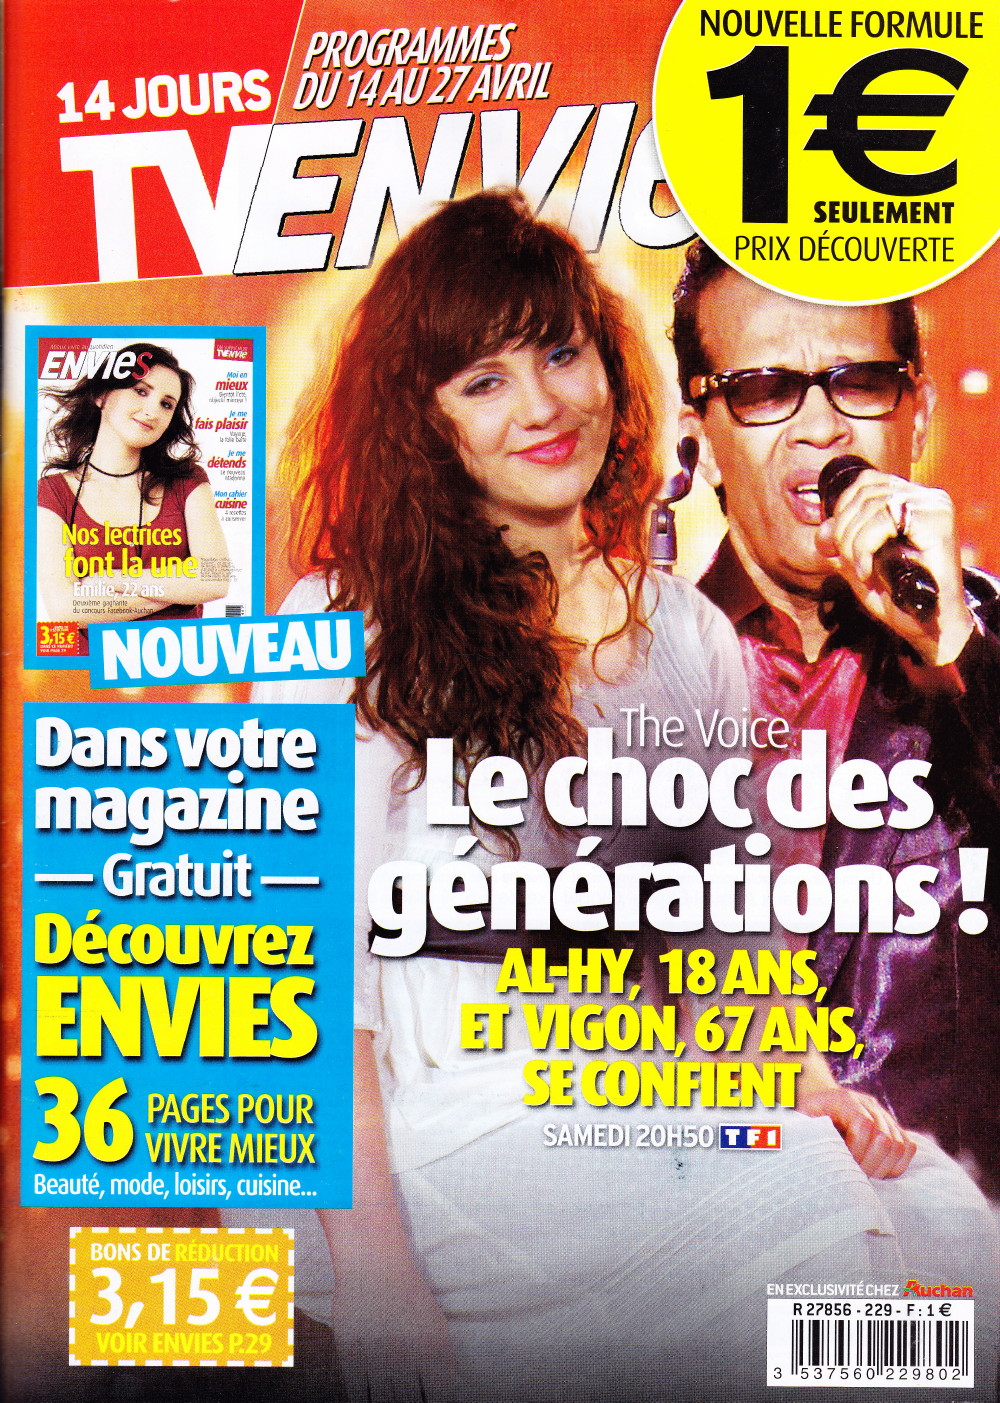 "VIGON, Papa soul" (4e de couverture de "Libération", 14 avril 2012) 1204140422481423619717553